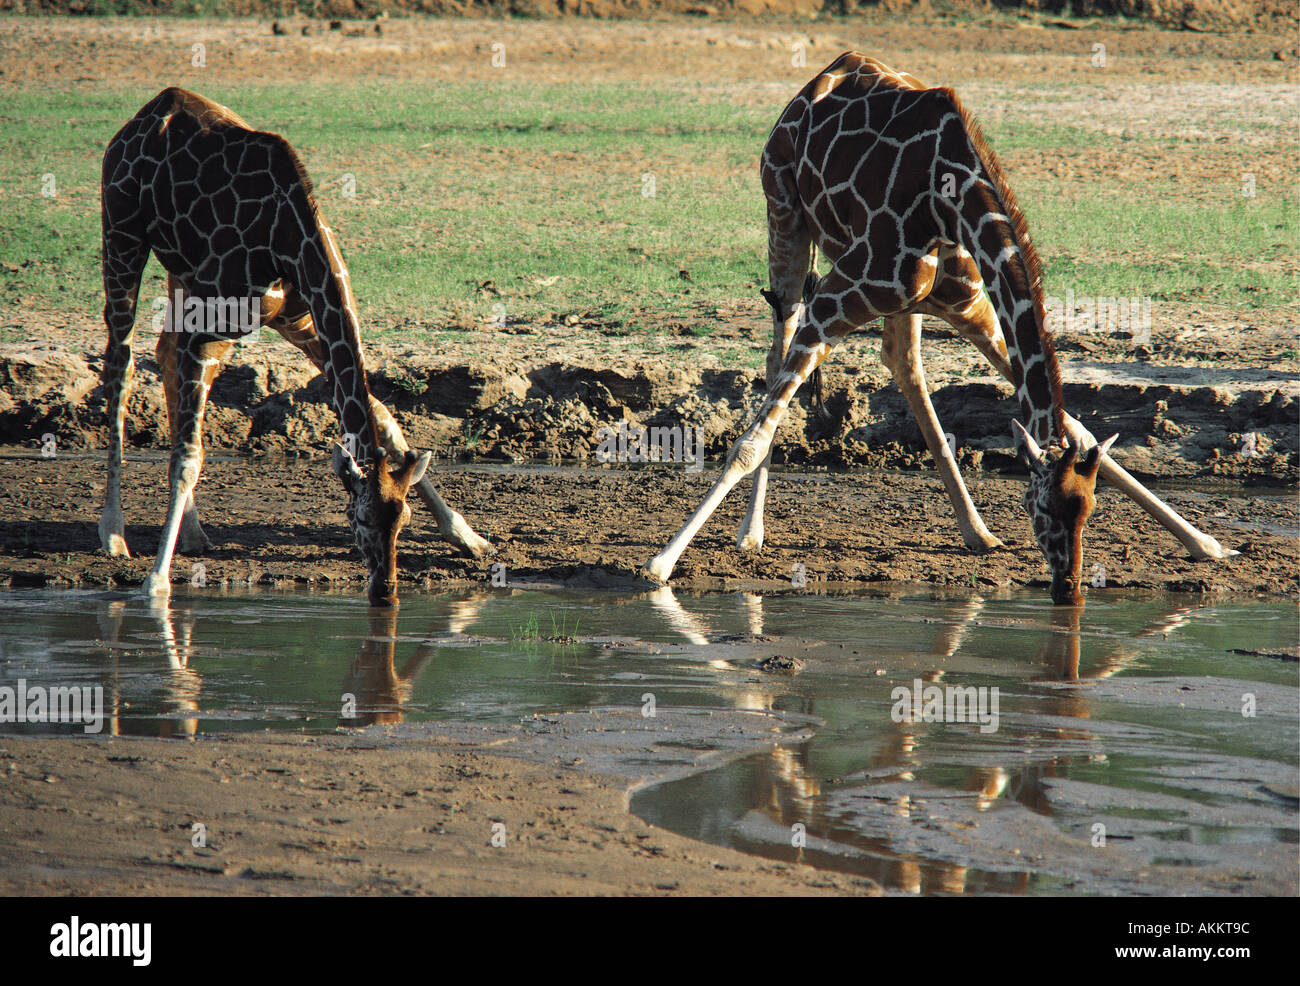 Giraffe réticulée de boire à l'Uaso Nyiro Samburu National Reserve Kenya Afrique de l'Est Banque D'Images